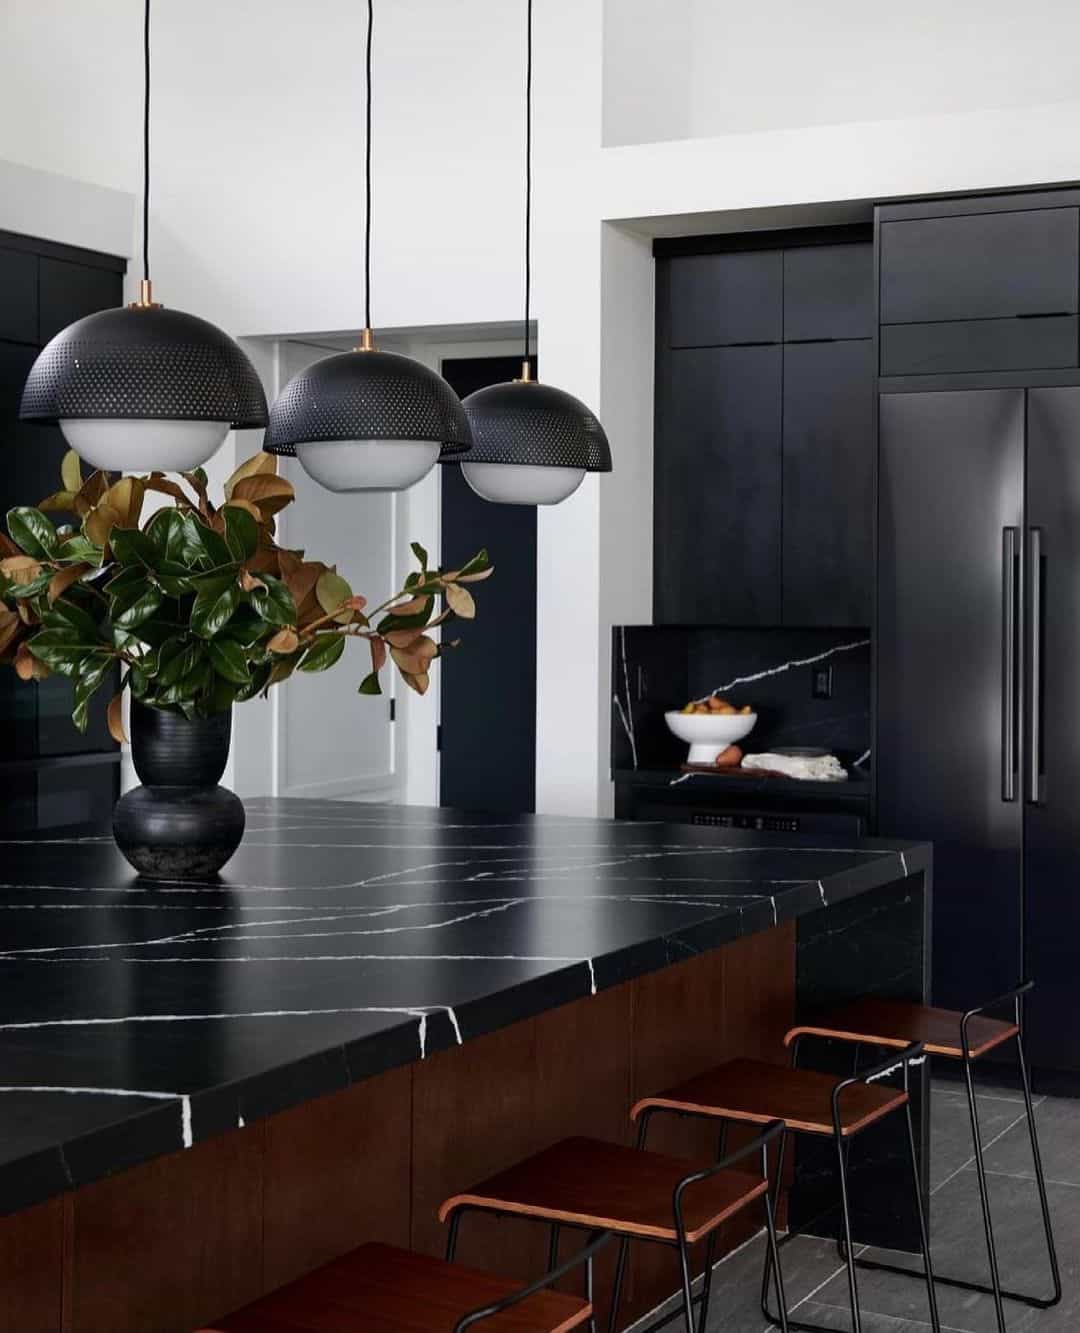 black kitchen. Black Kitchen: A Versatile Look to Your…, by worktopscomuk